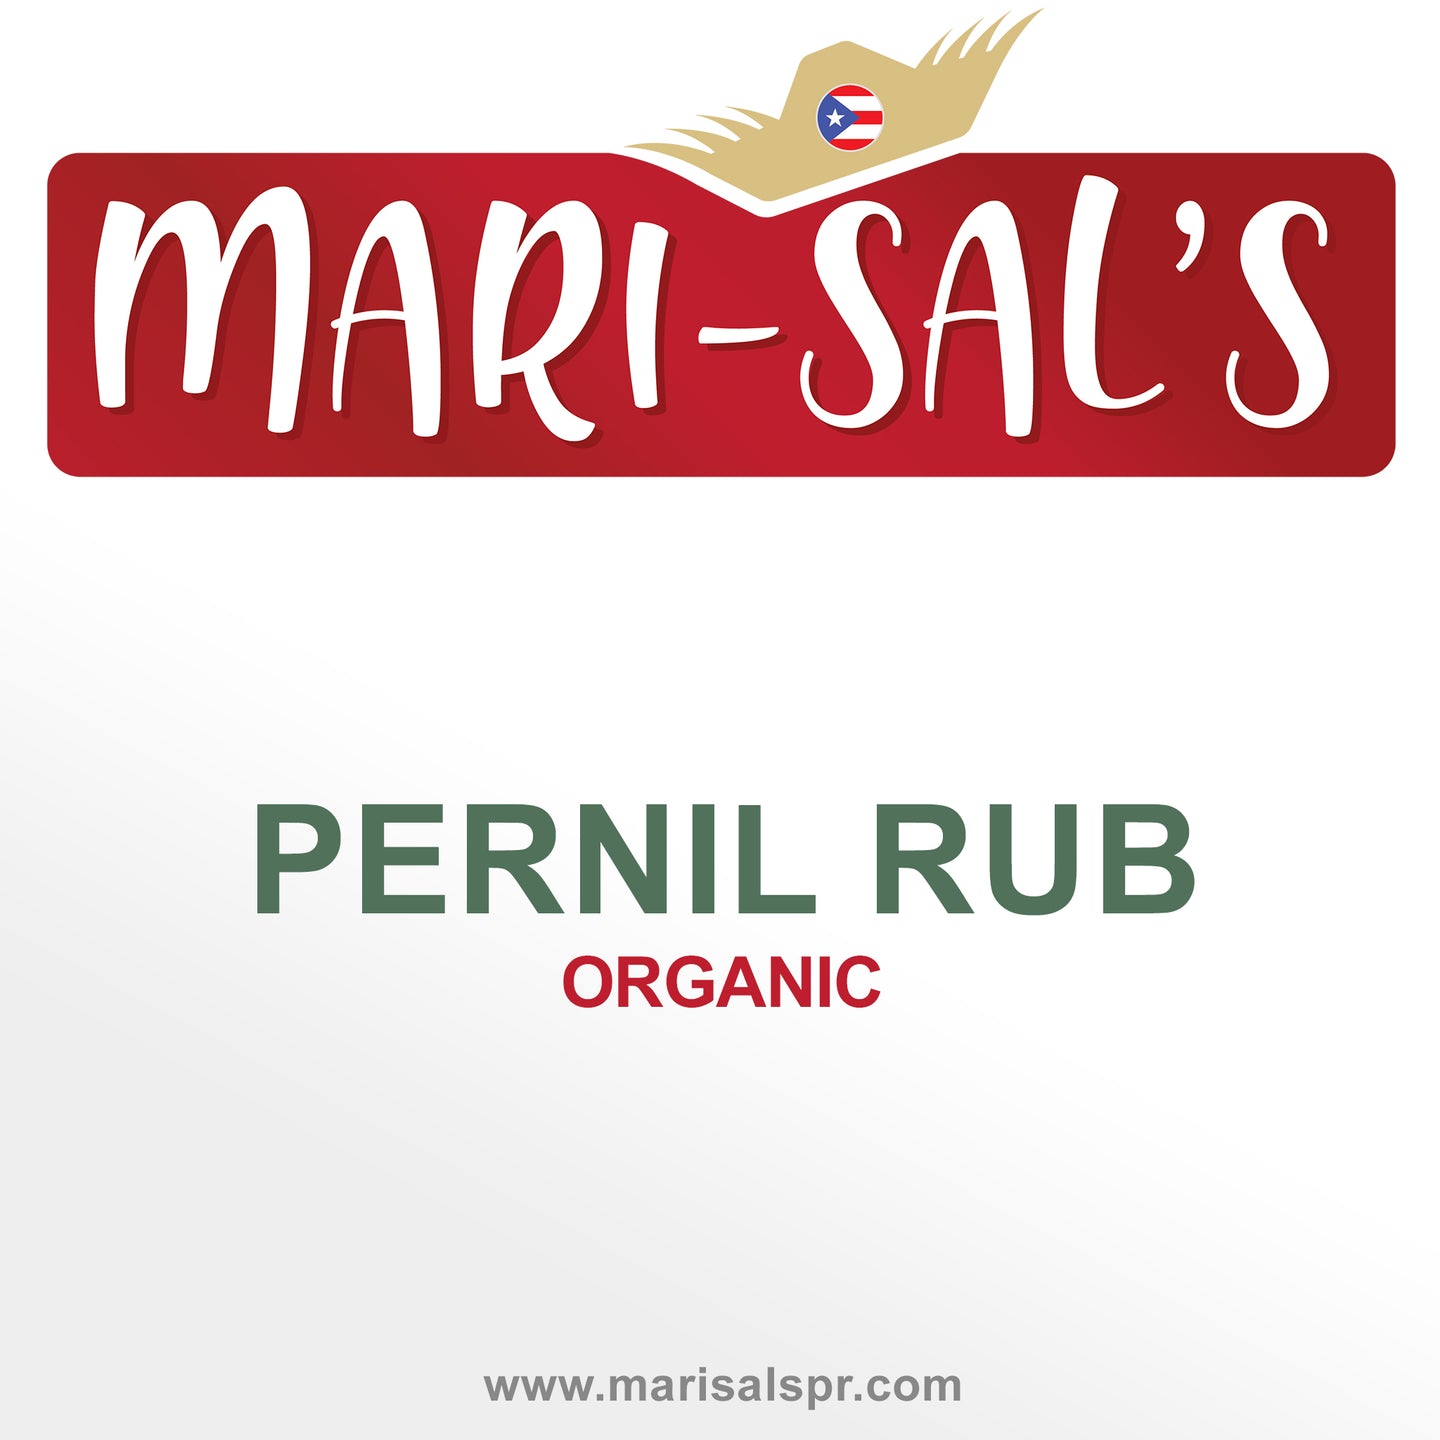 Mari-Sal's Pernil Rub